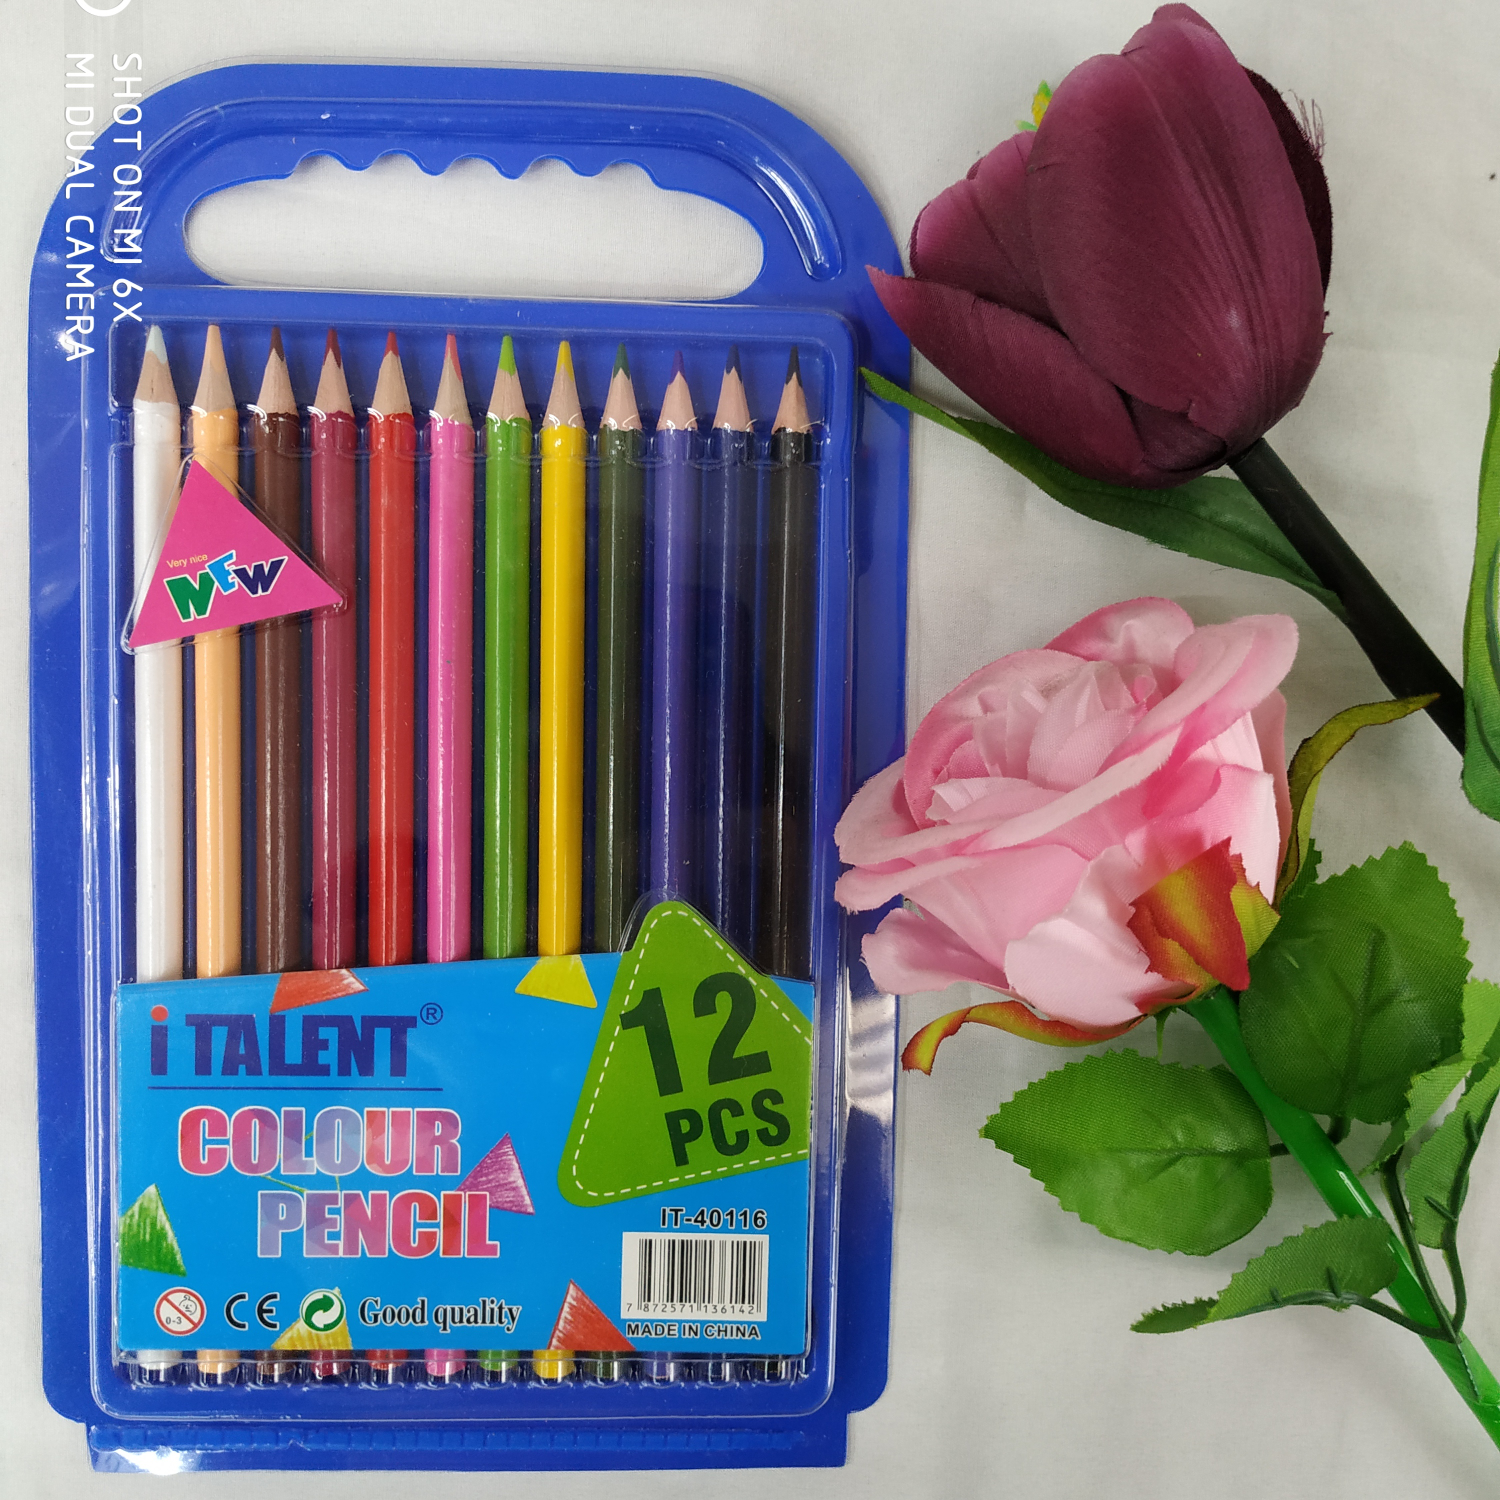 儿童幼儿园学生绘画12色彩色铅笔手提款式学生绘画铅笔智力创作开发智力儿童益智用品礼品